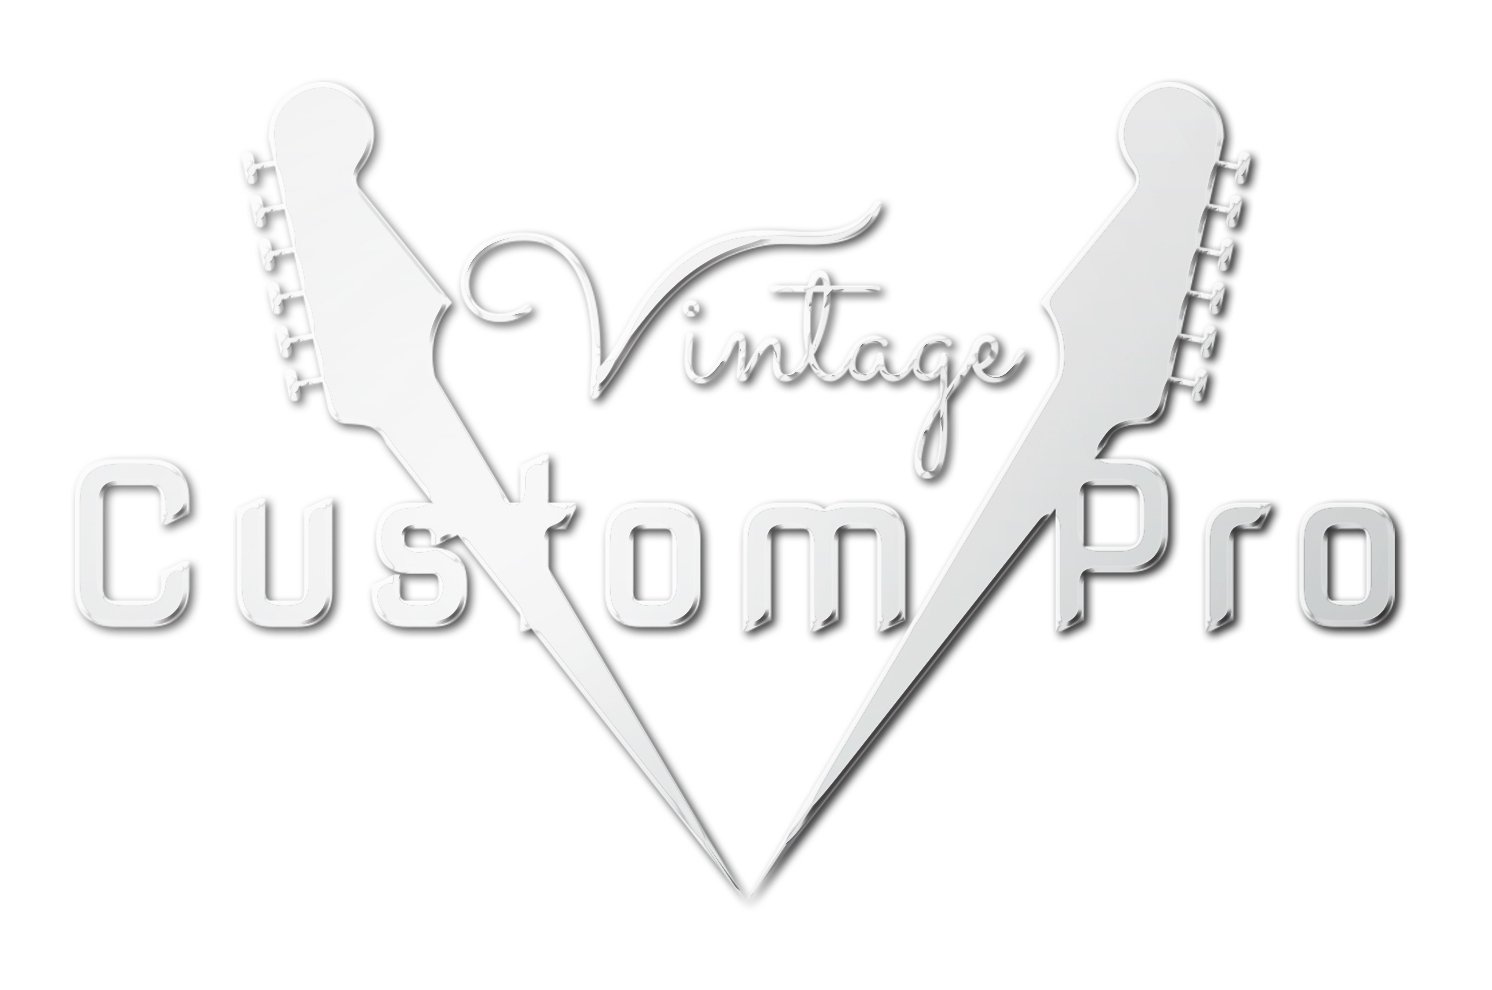 Vintage* V6SSB Electric Guitar, Electric Guitar for sale at Richards Guitars.